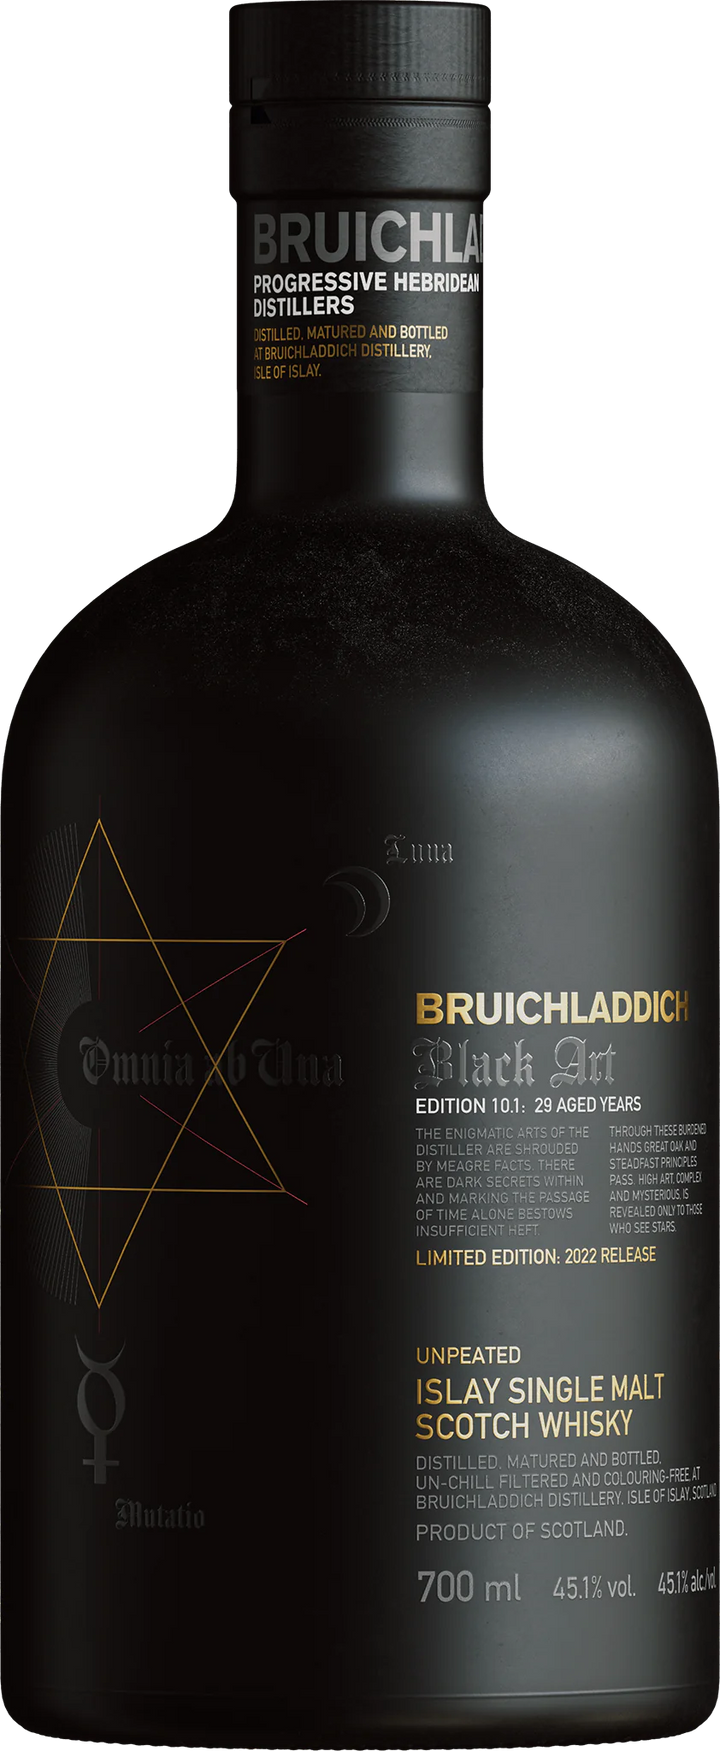 Bruichladdich Islay Single Malt Scotch Whisky Aged 29 Years Black Art Edition 10.1 750 ML